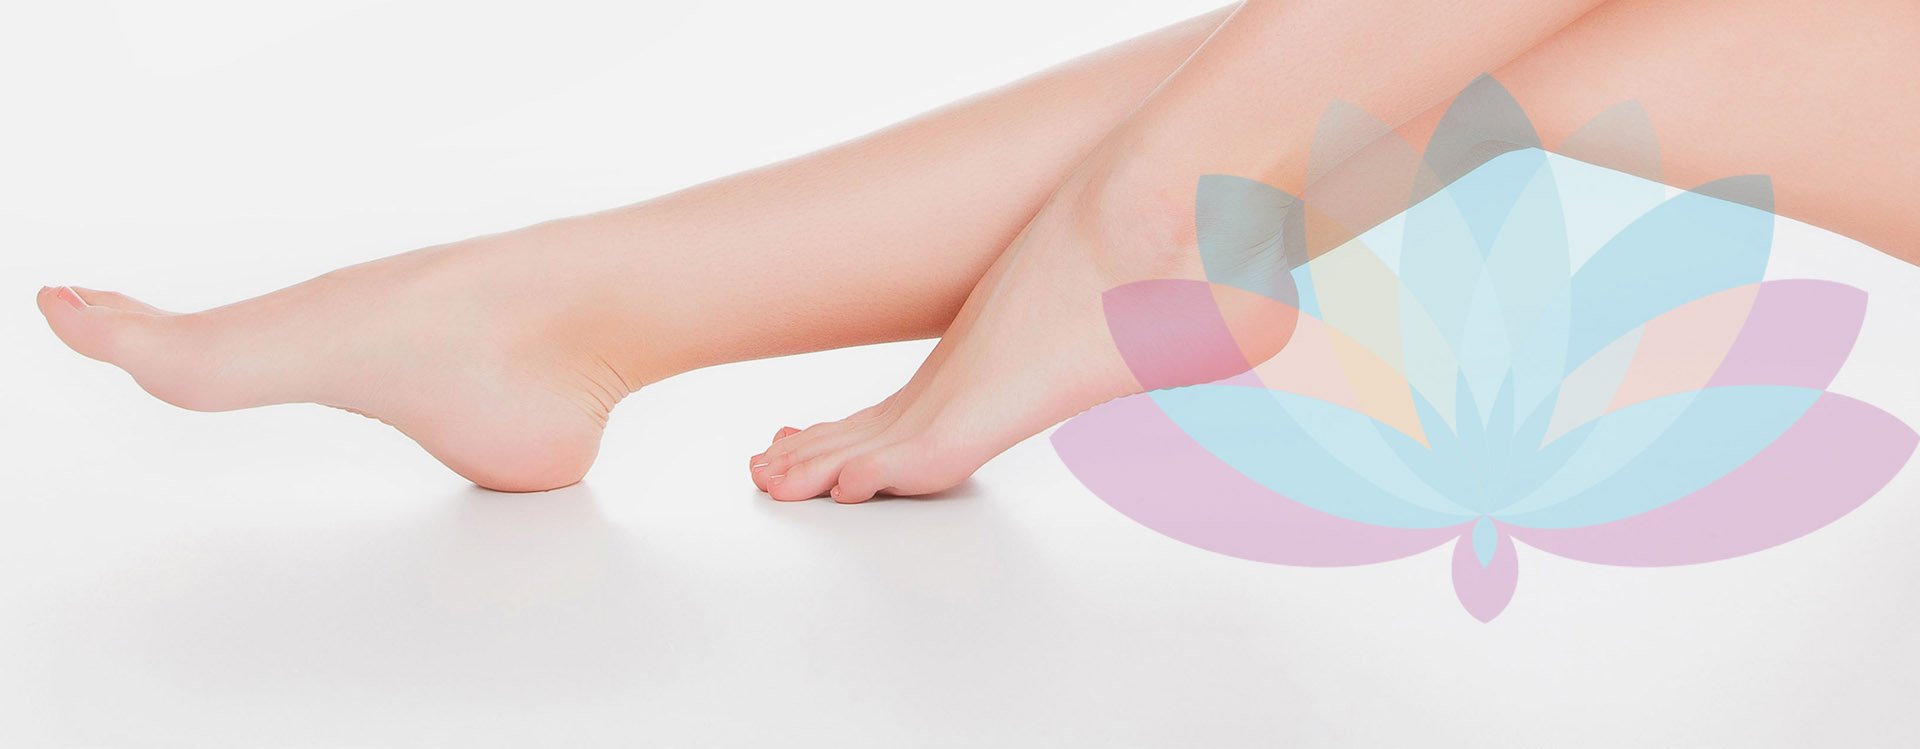 a kezelés almaecet gomba köröm lábak medicine foot nail küzdelem